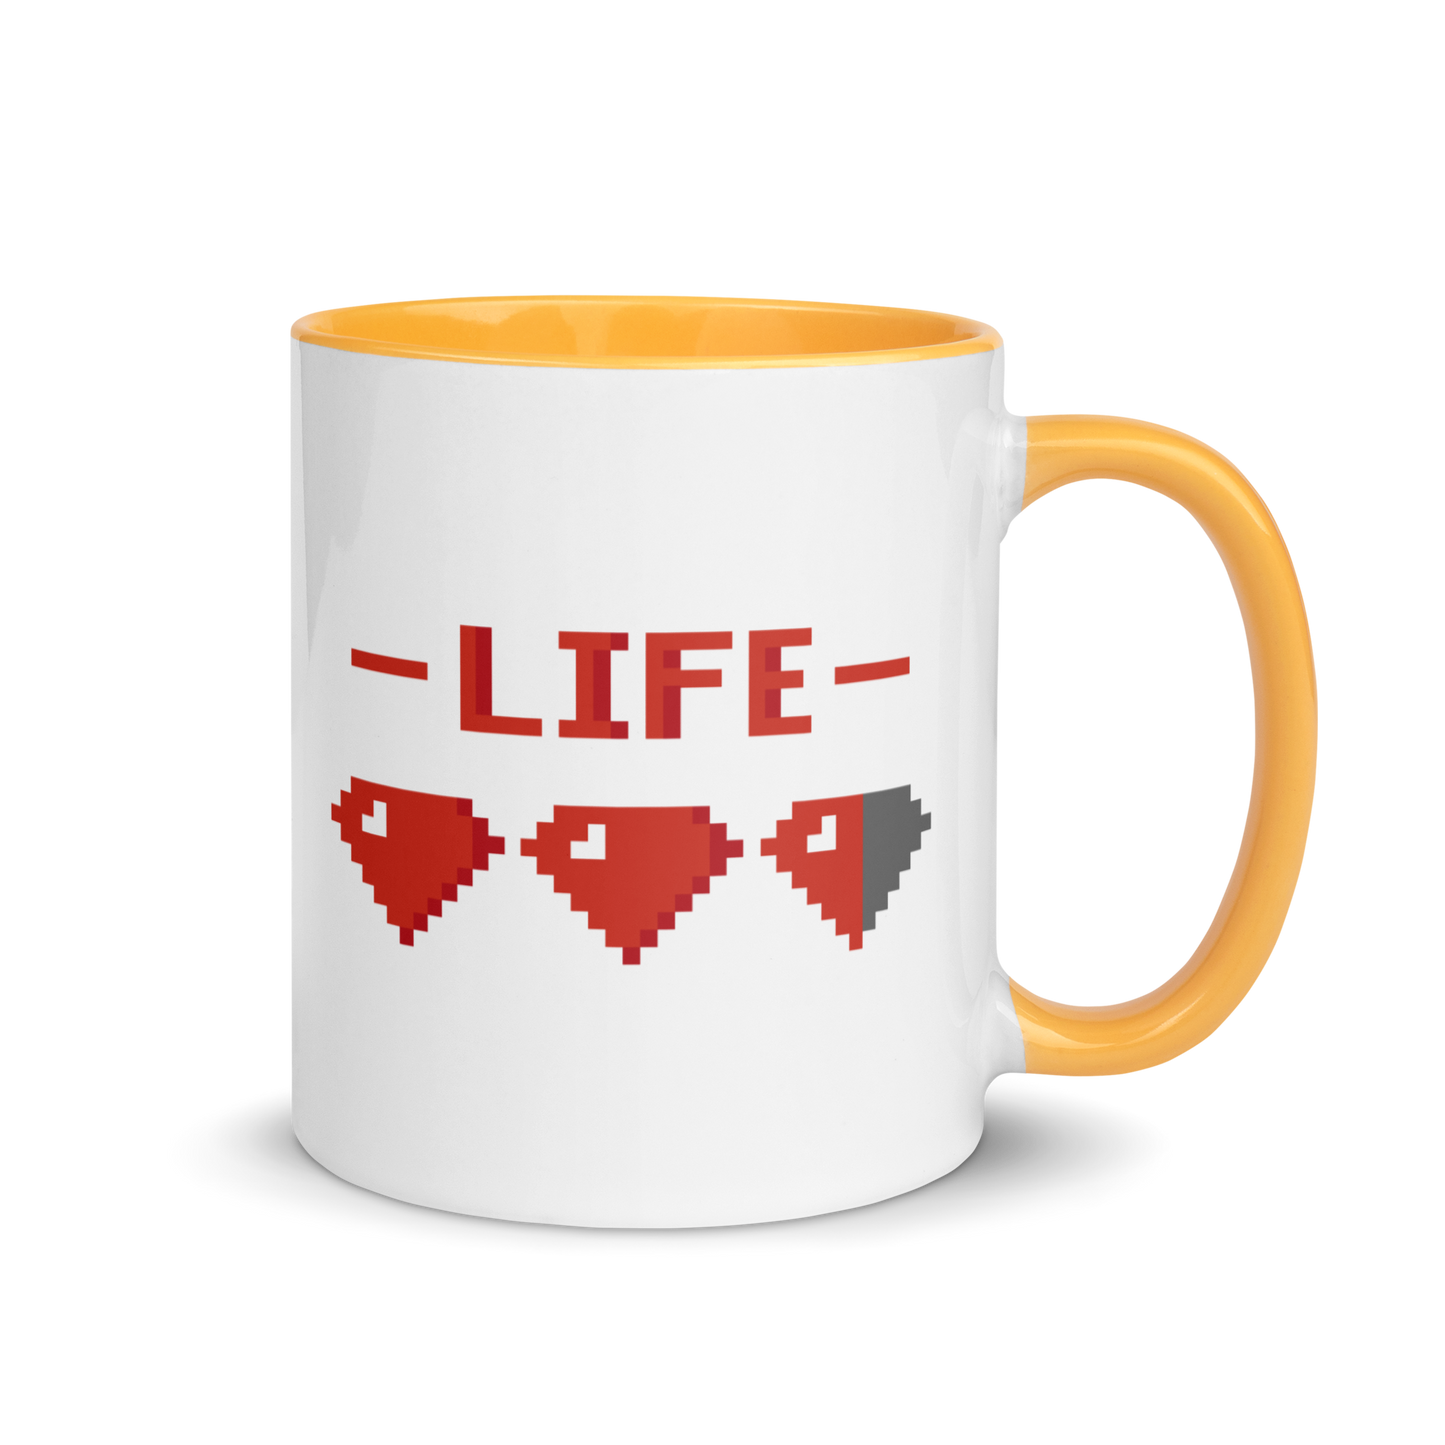 Extra Ruby Life Coffee Mug